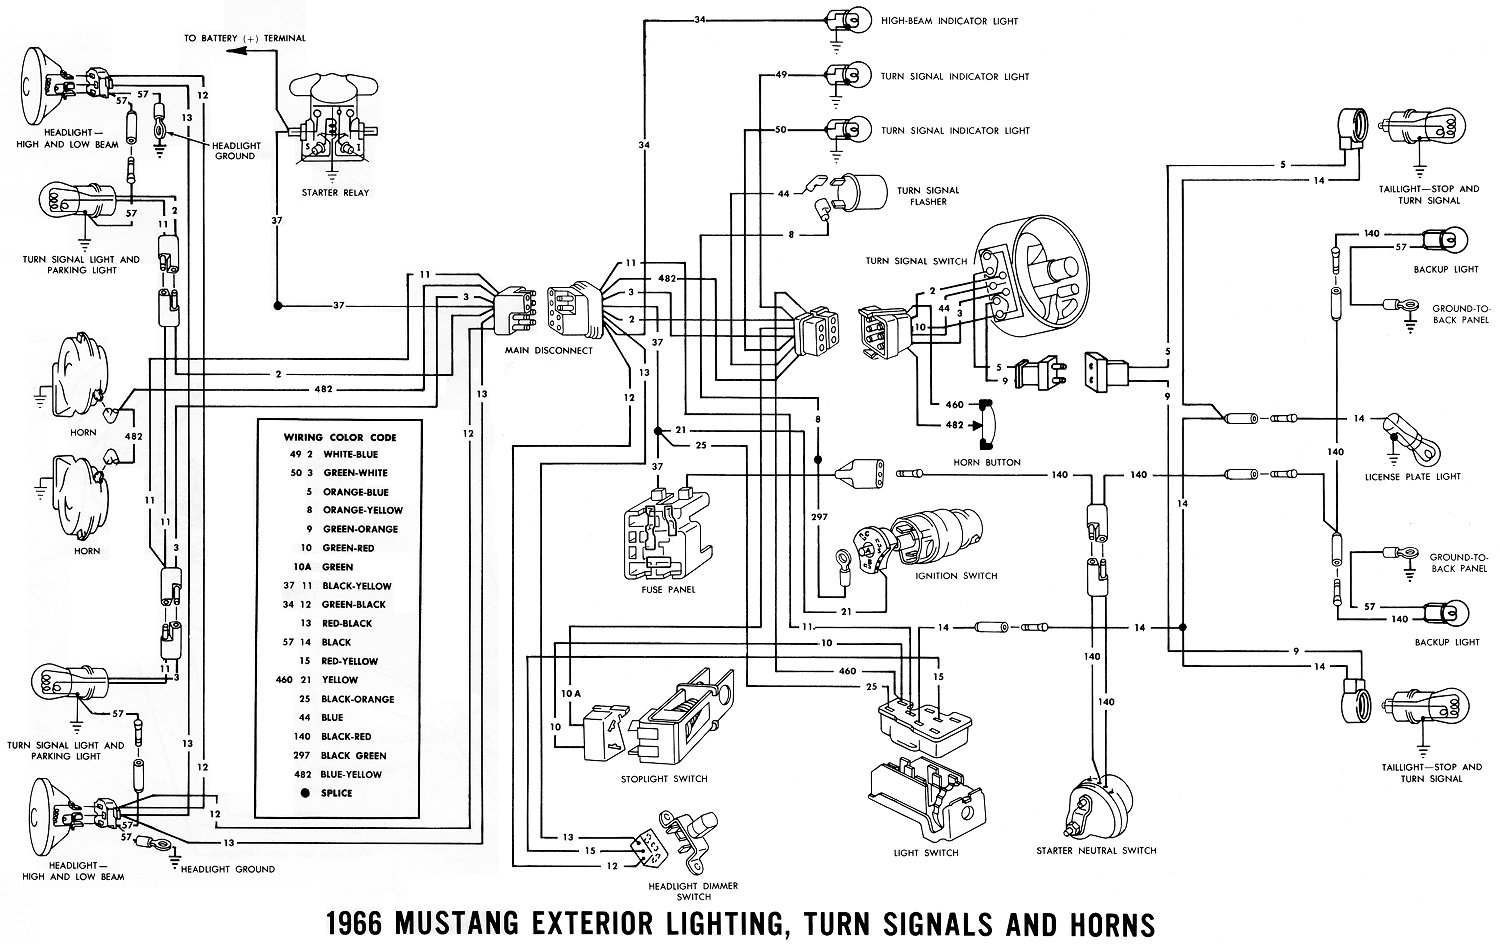 1966 Mustang Wiring Diagrams Average